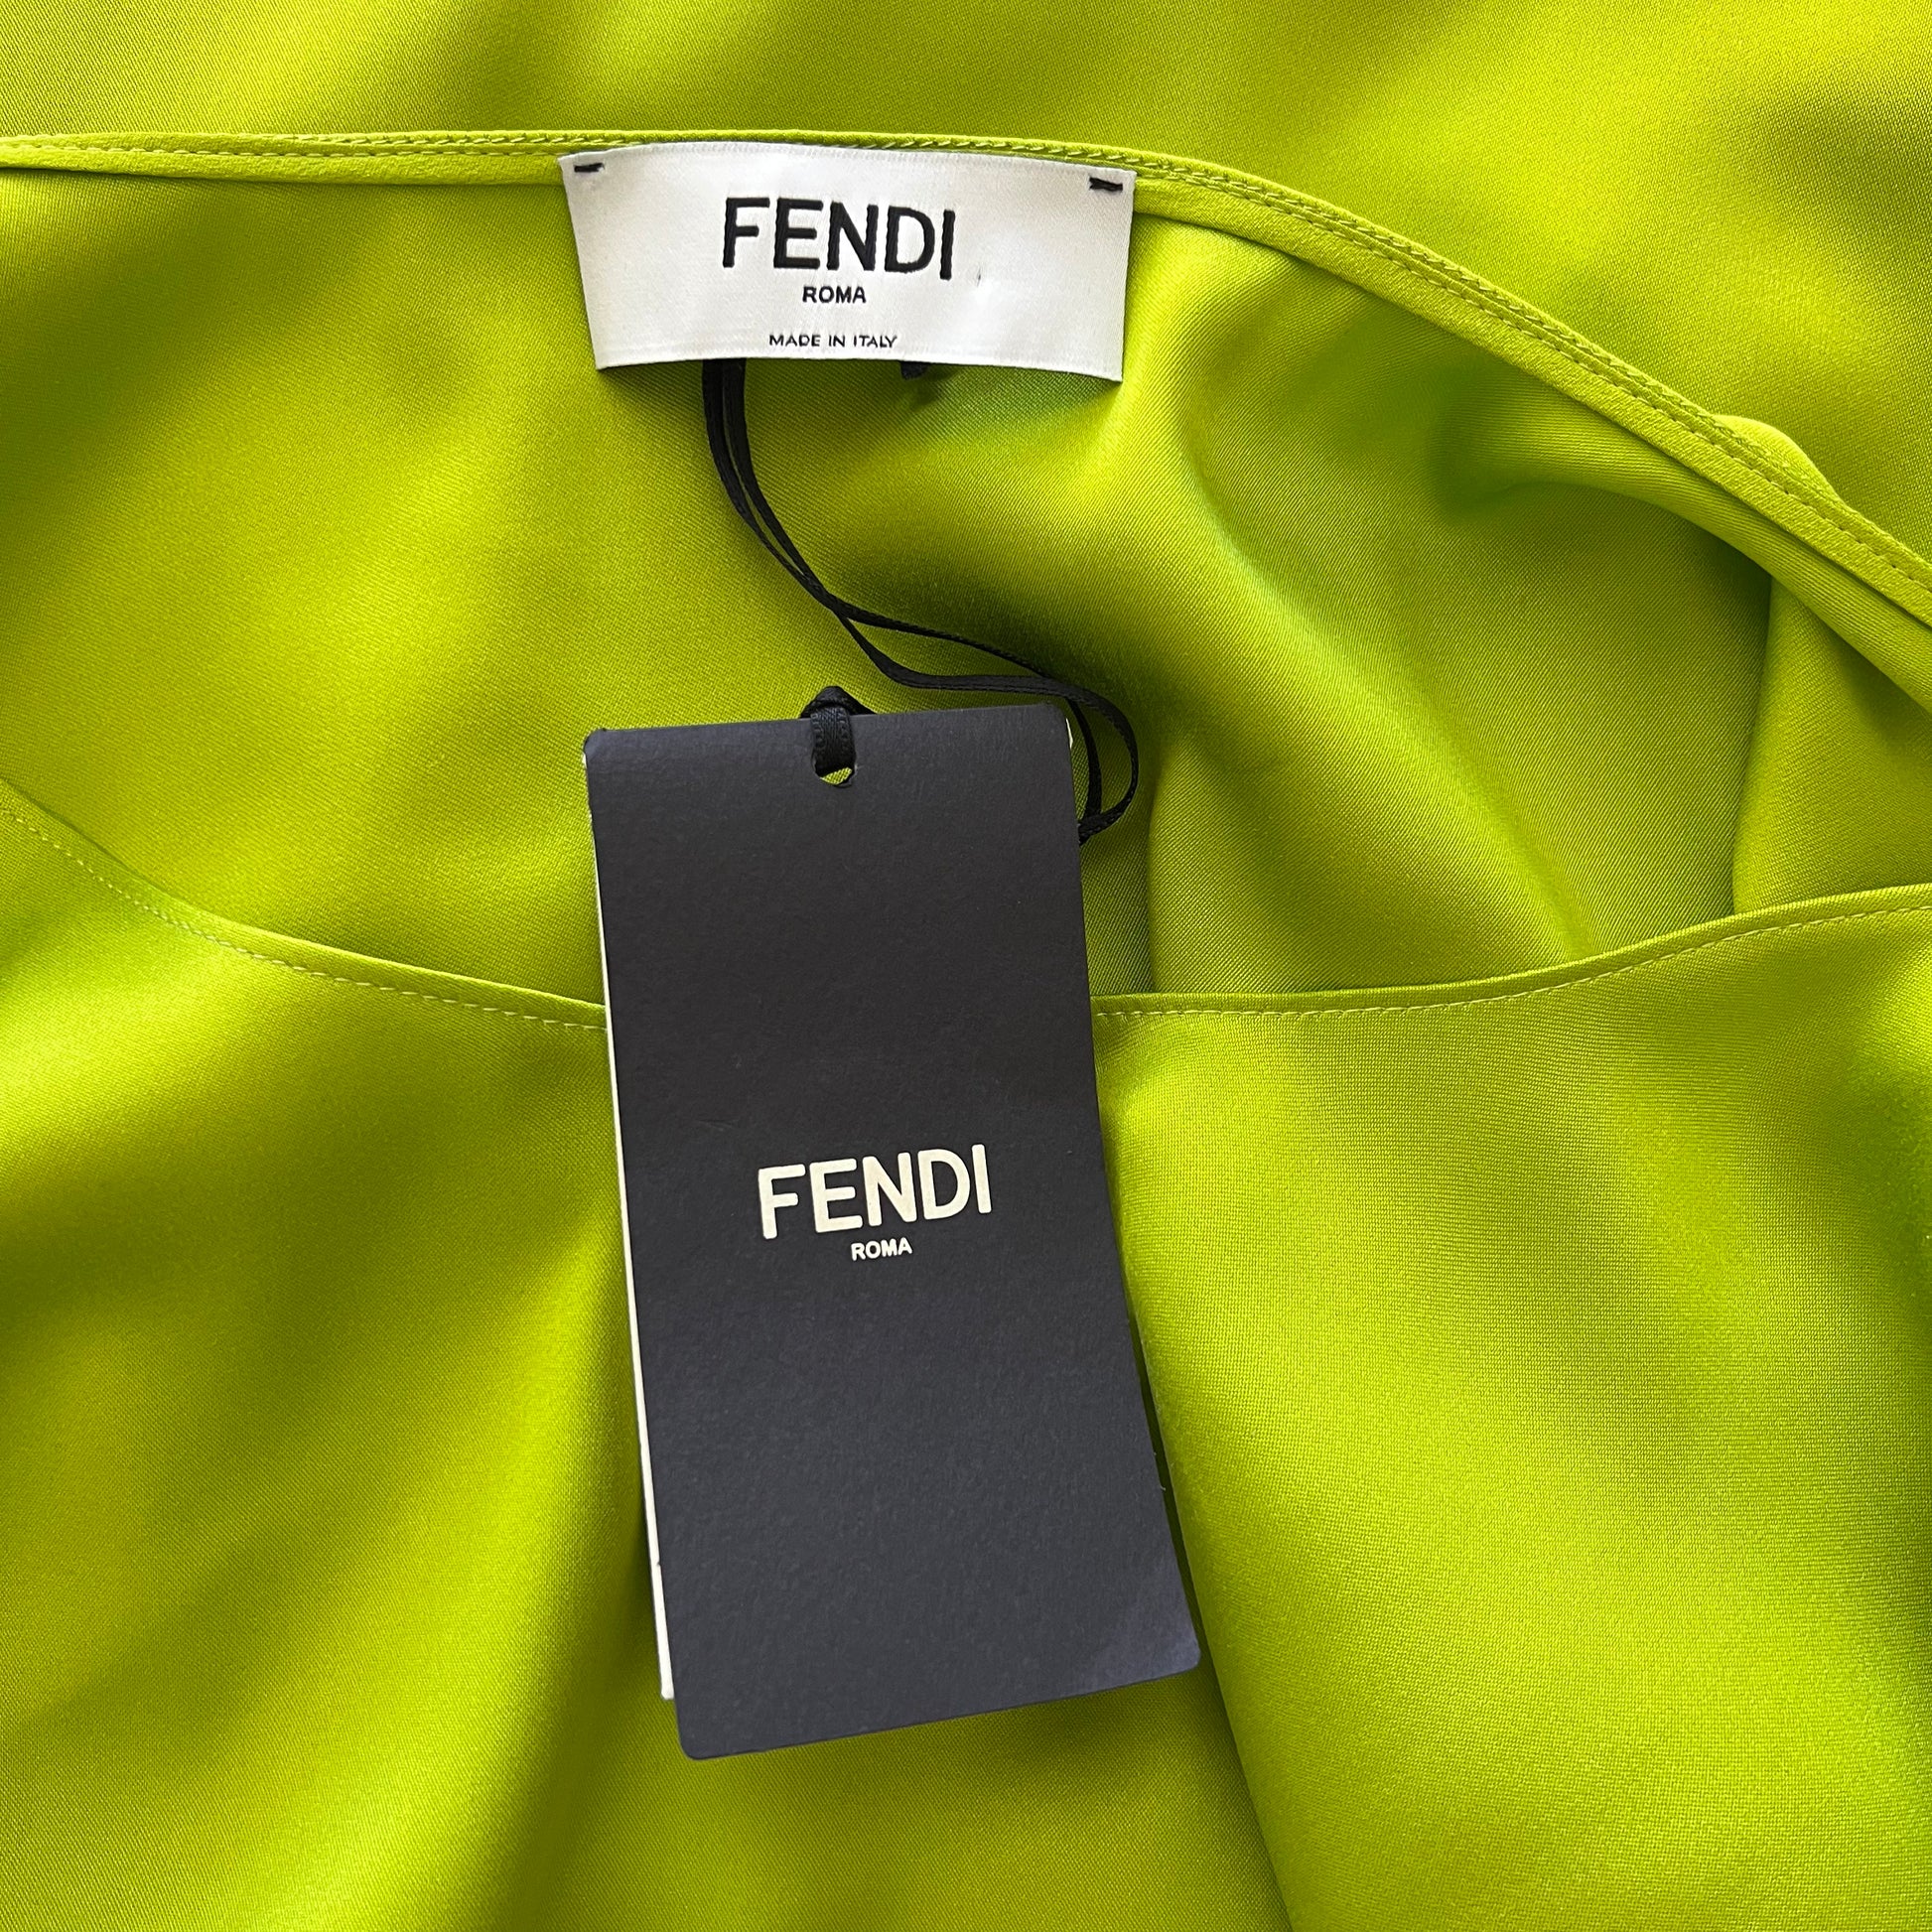 Fendi Fendi Roma Sweatshirt in Khaki Green